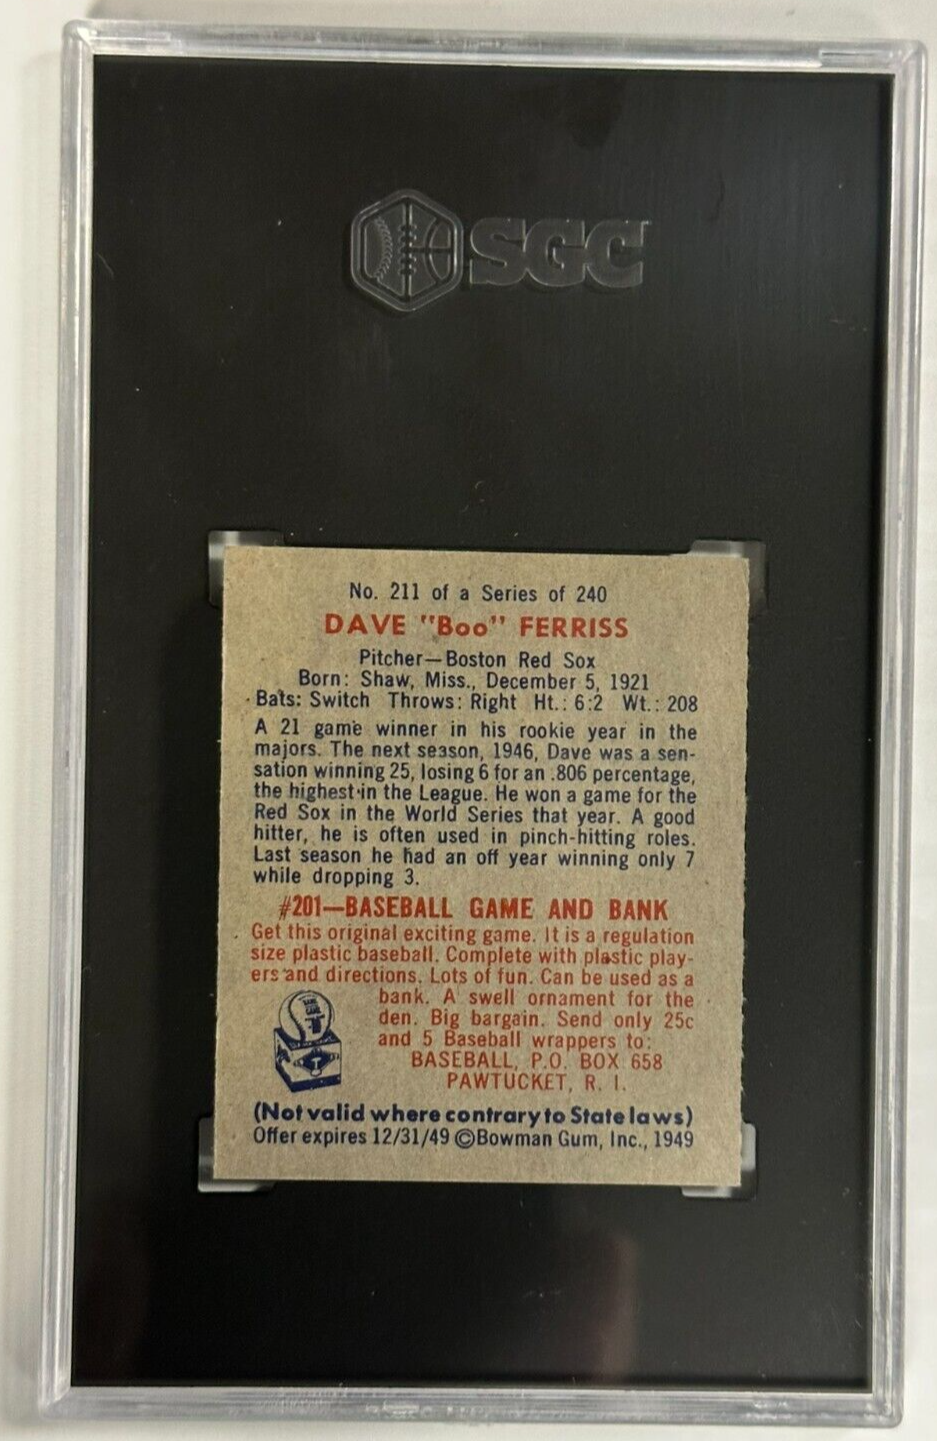 1949 Bowman Dave Boo Ferriss Rookie Card SGC 8 NM-MT #211 Red Sox